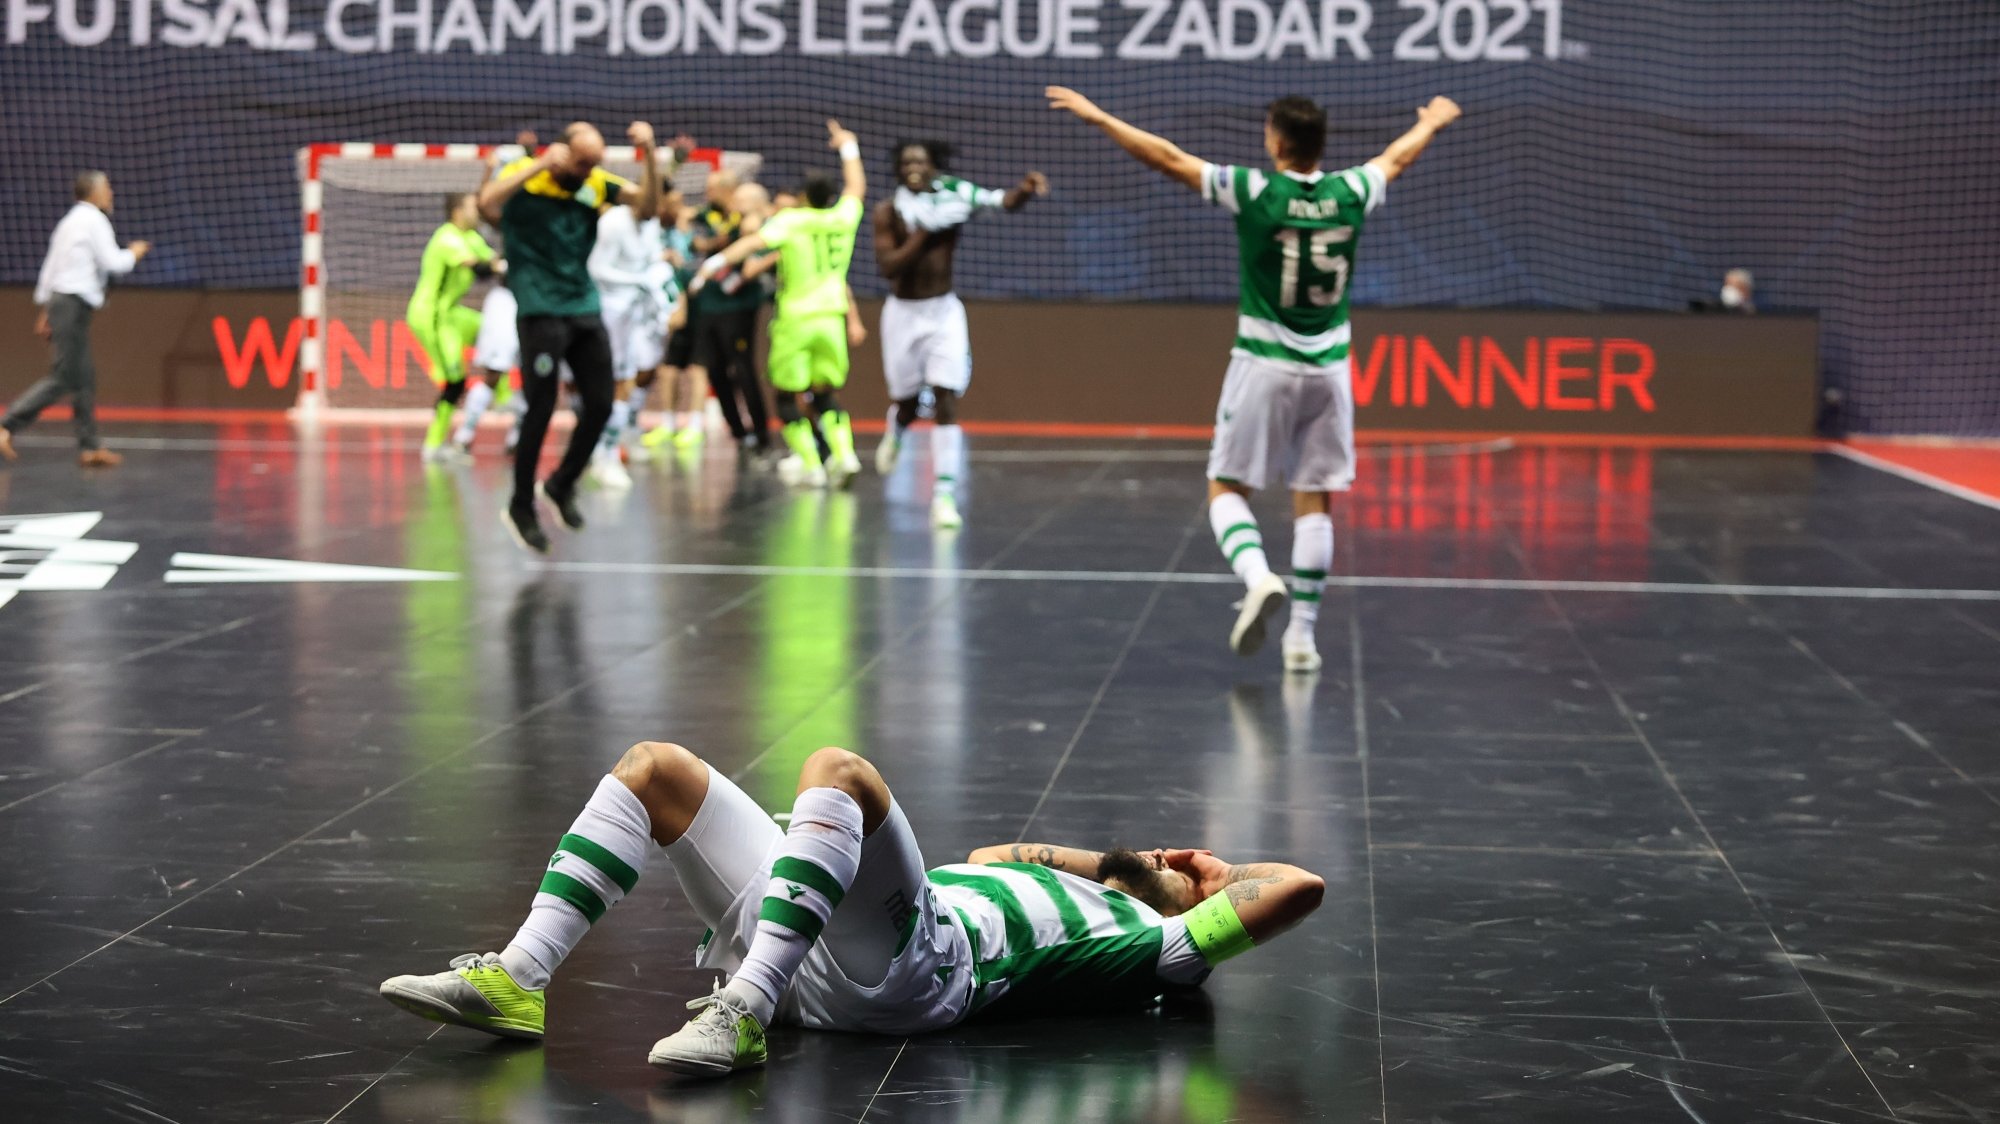 João Matos marcou o golo da reviravolta e levantou o troféu de campeão europeu pela segunda vez em três anos